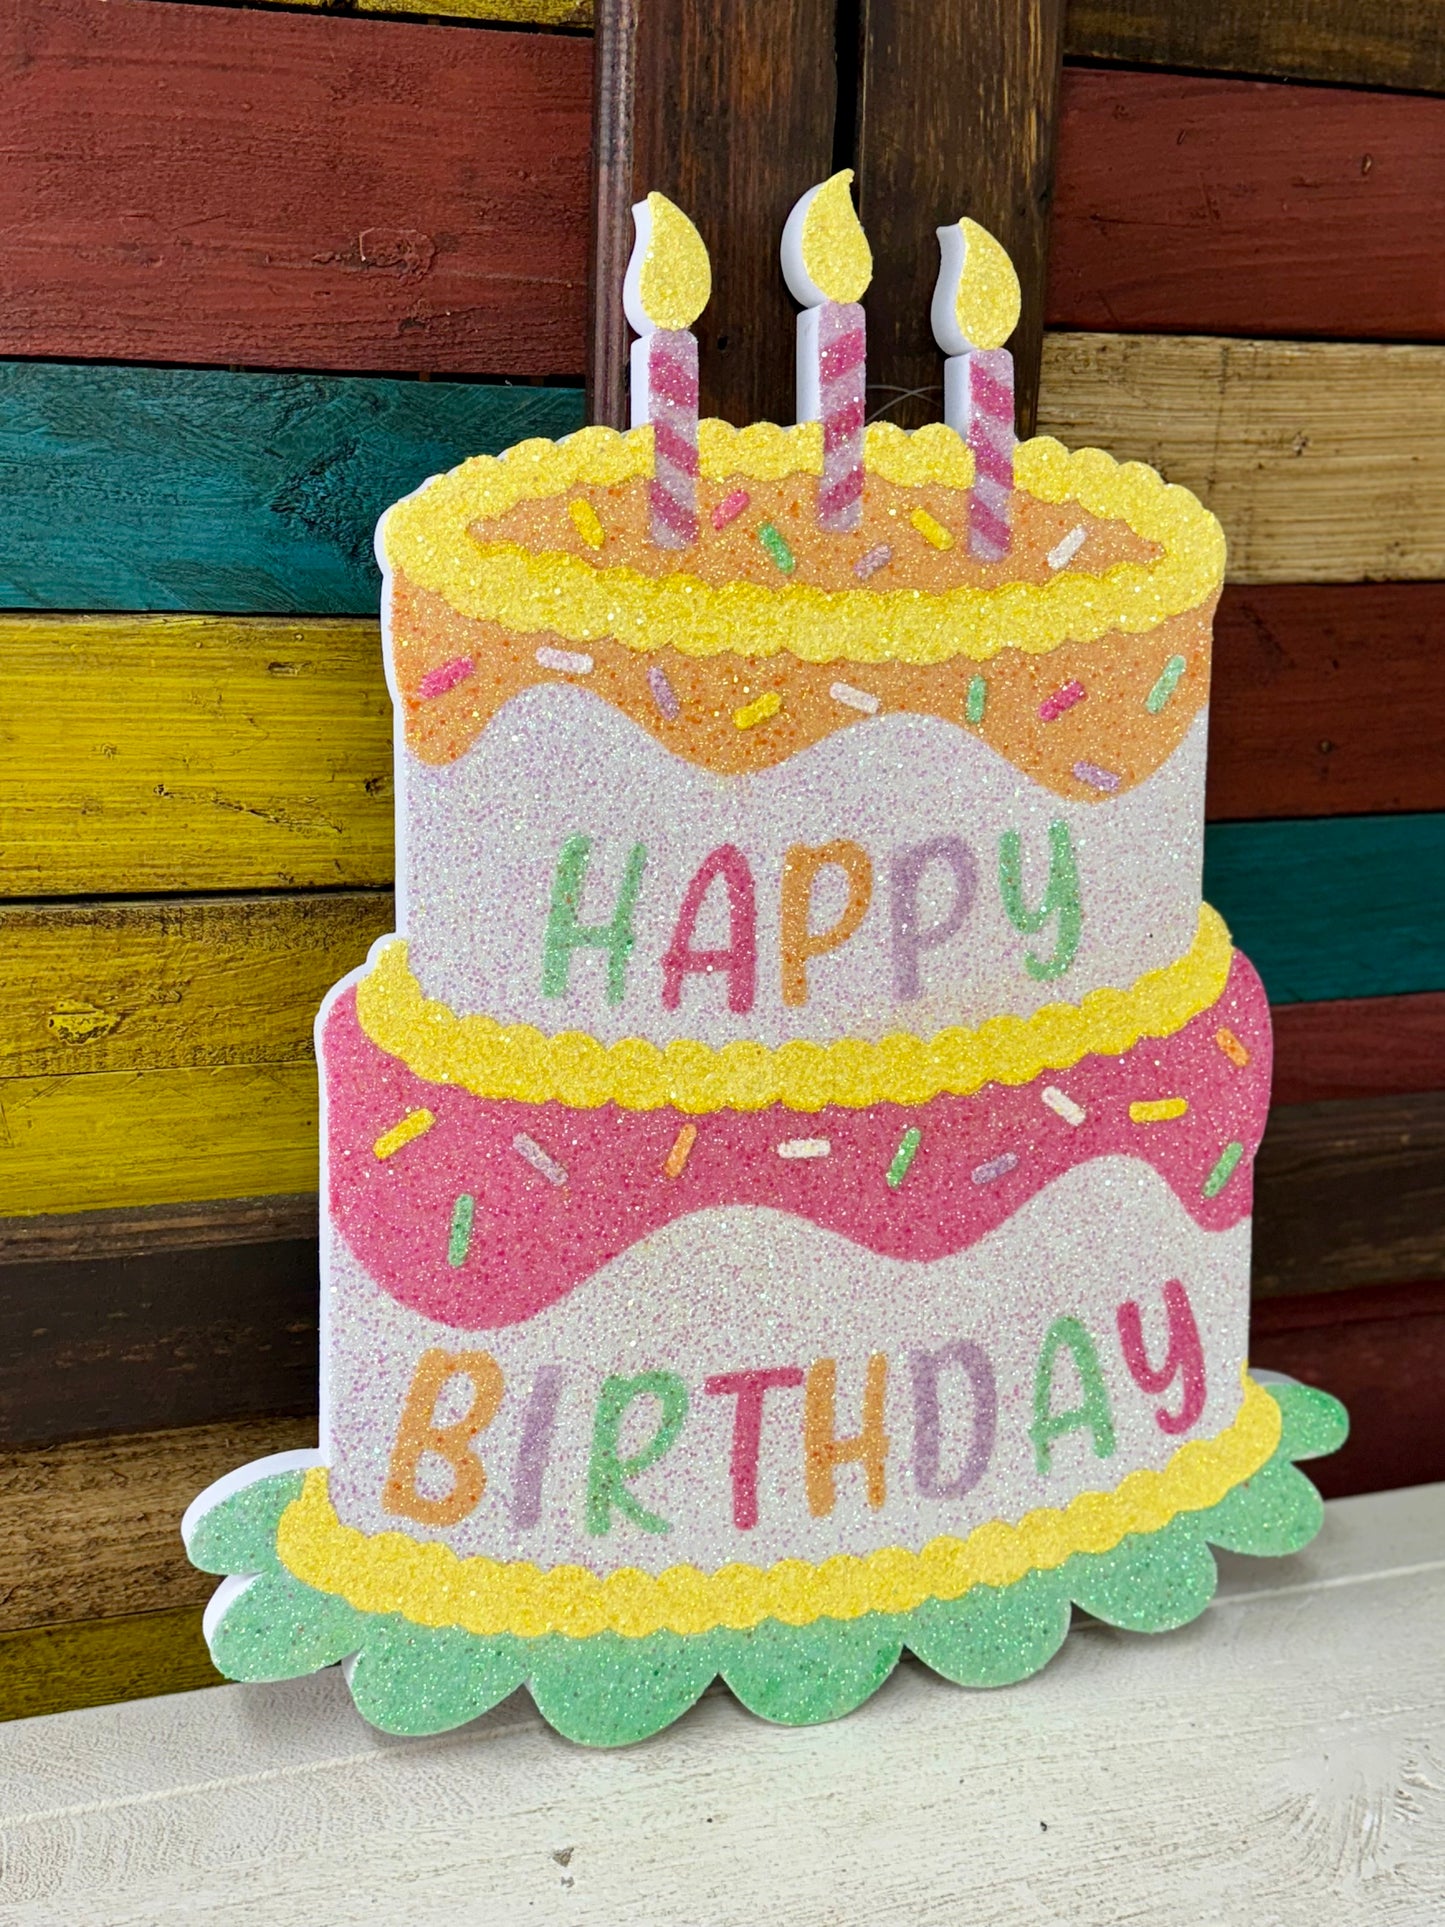 Happy Birthday Pastel Glittered Eva Birthday Cake Sign